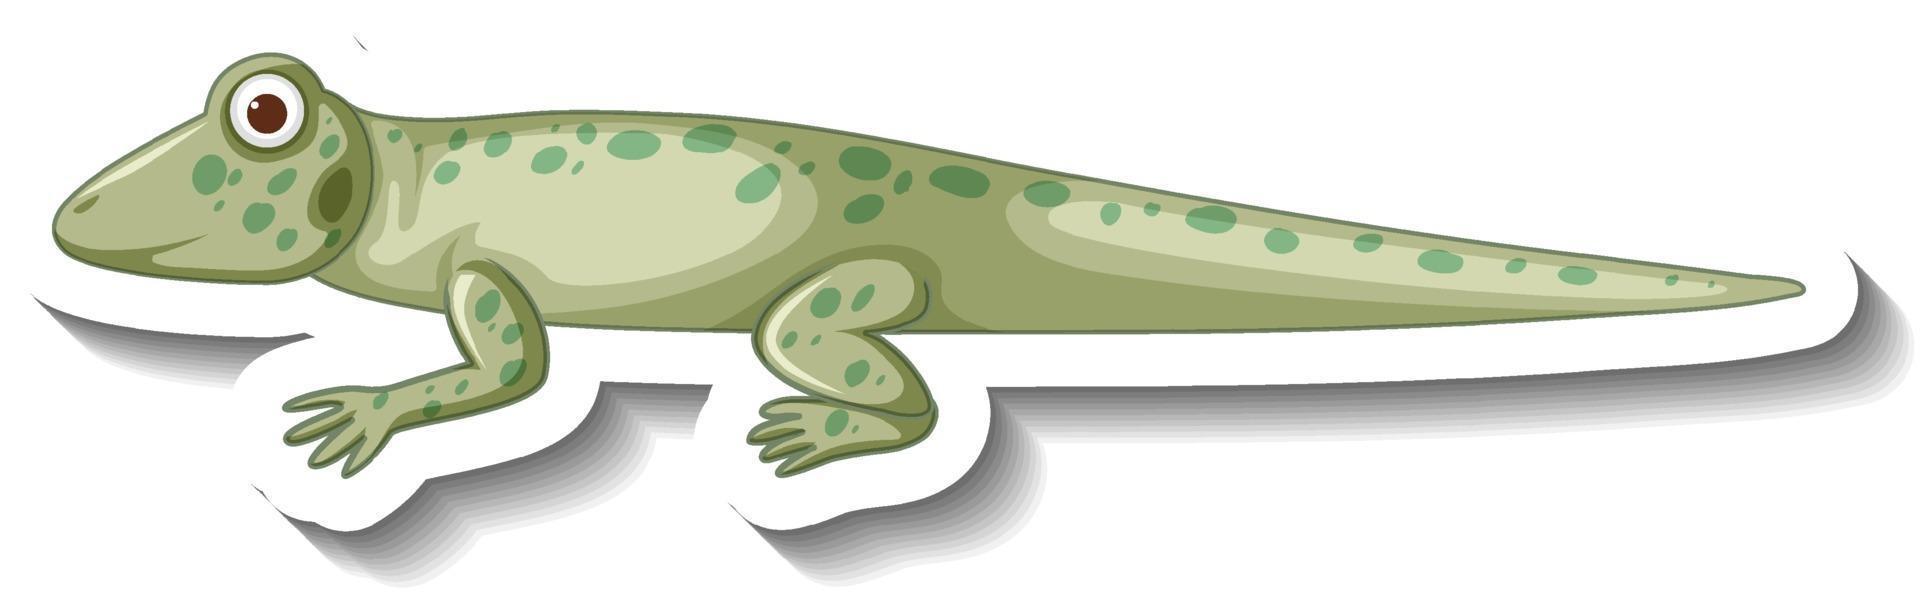 Side view of gecko or lizard cartoon sticker vector